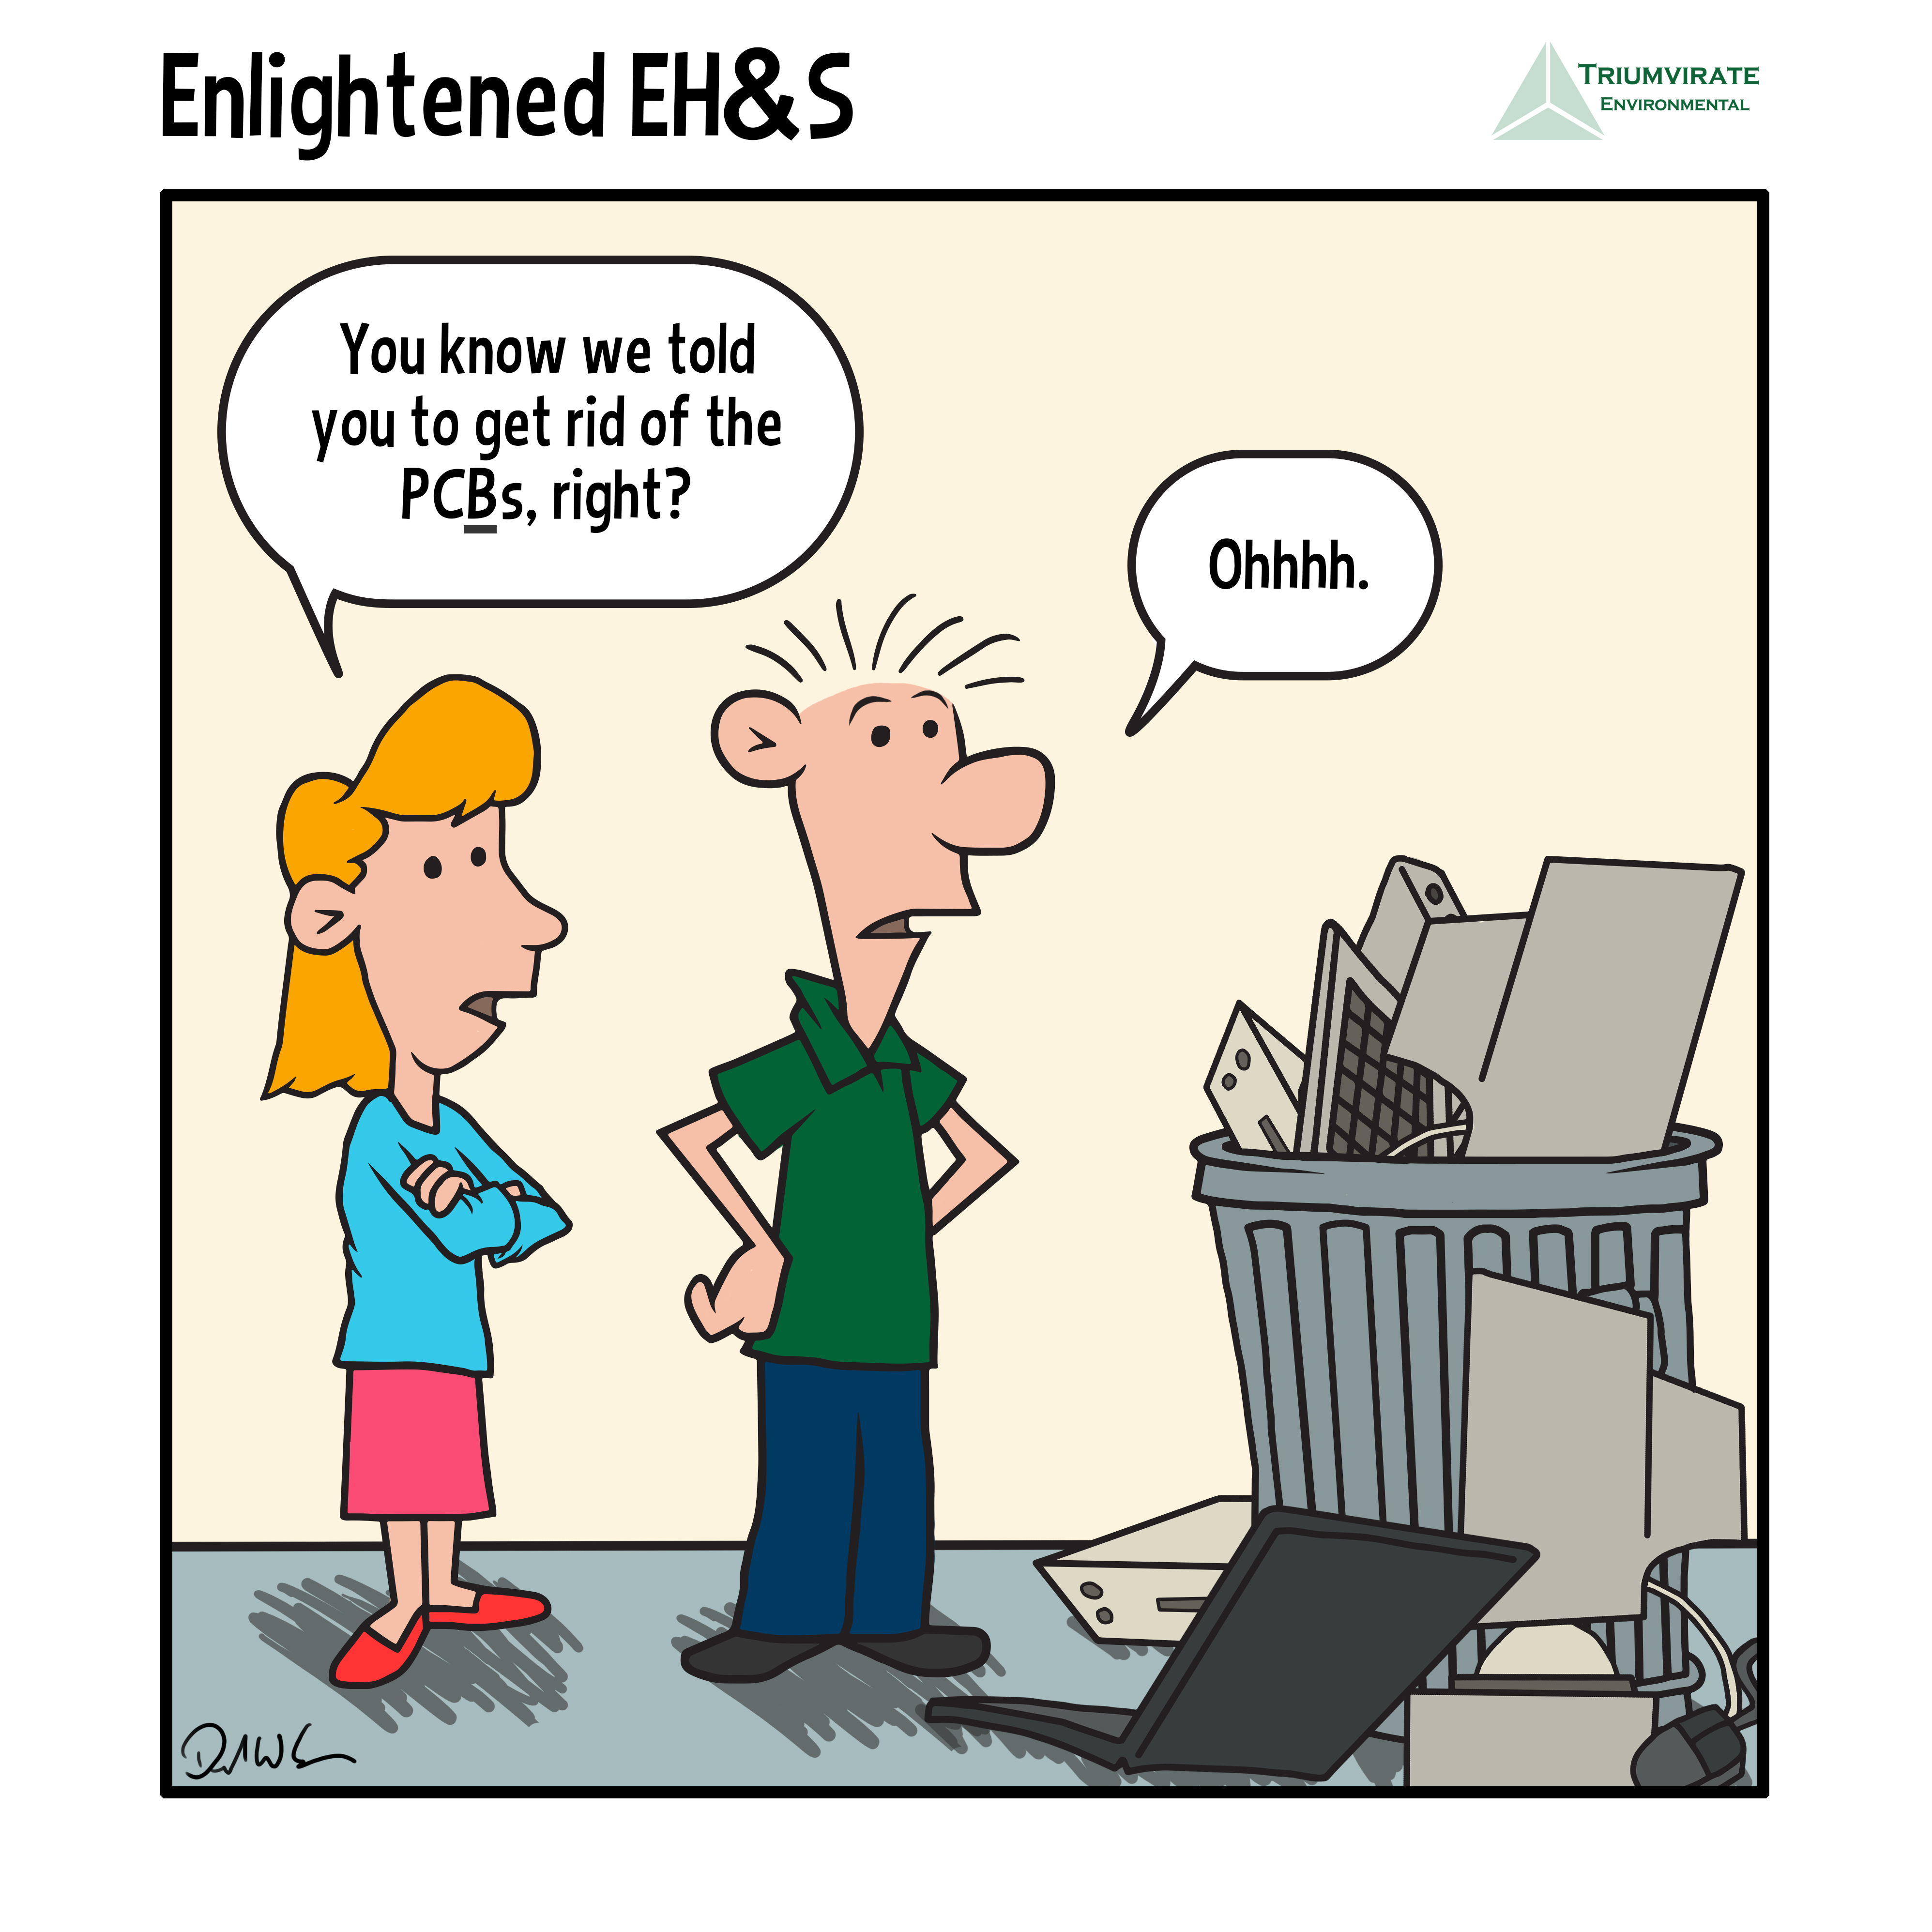 EnlightenedEH&S 09